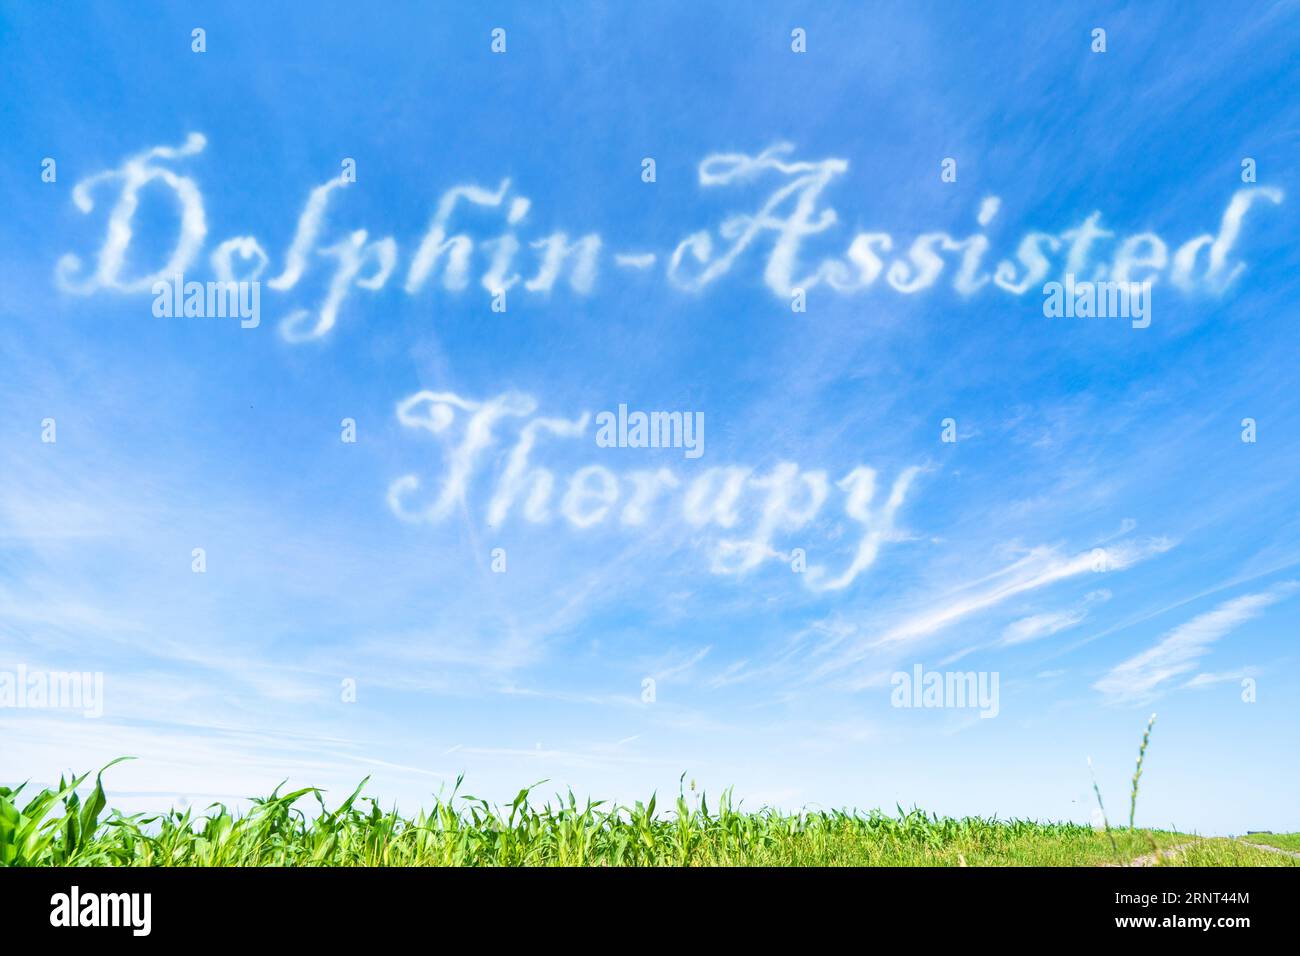 Delphingestützte Therapie: Nutzung von Interaktionen mit Delphinen zu therapeutischen Zwecken. Stockfoto